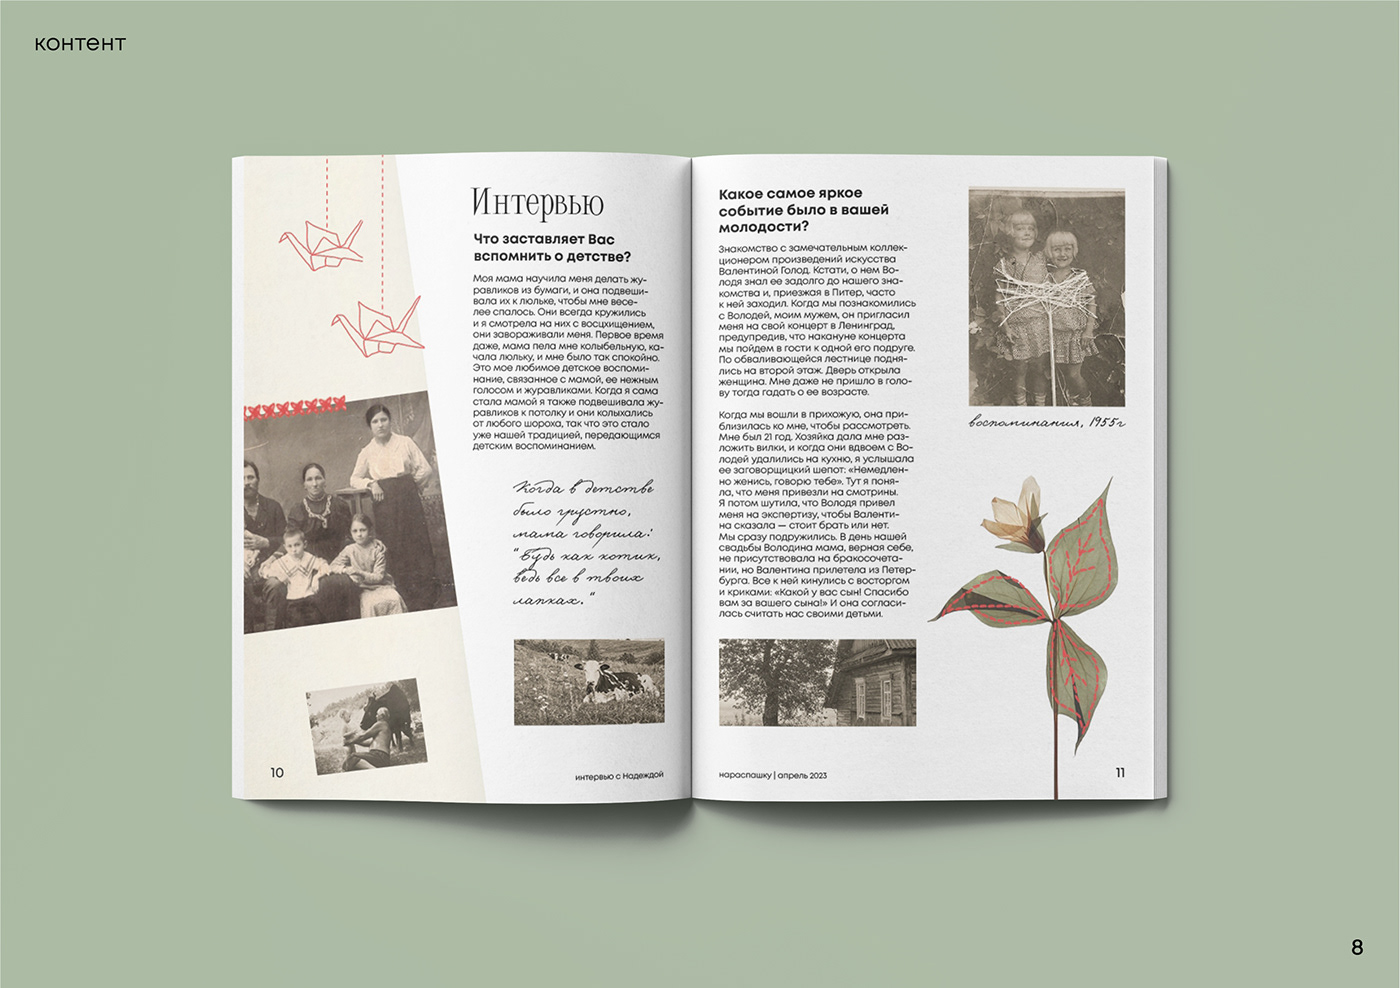 Zine  Zine Design magazine Magazine design верстка верстка журнала InDesign typography   book design publishing  